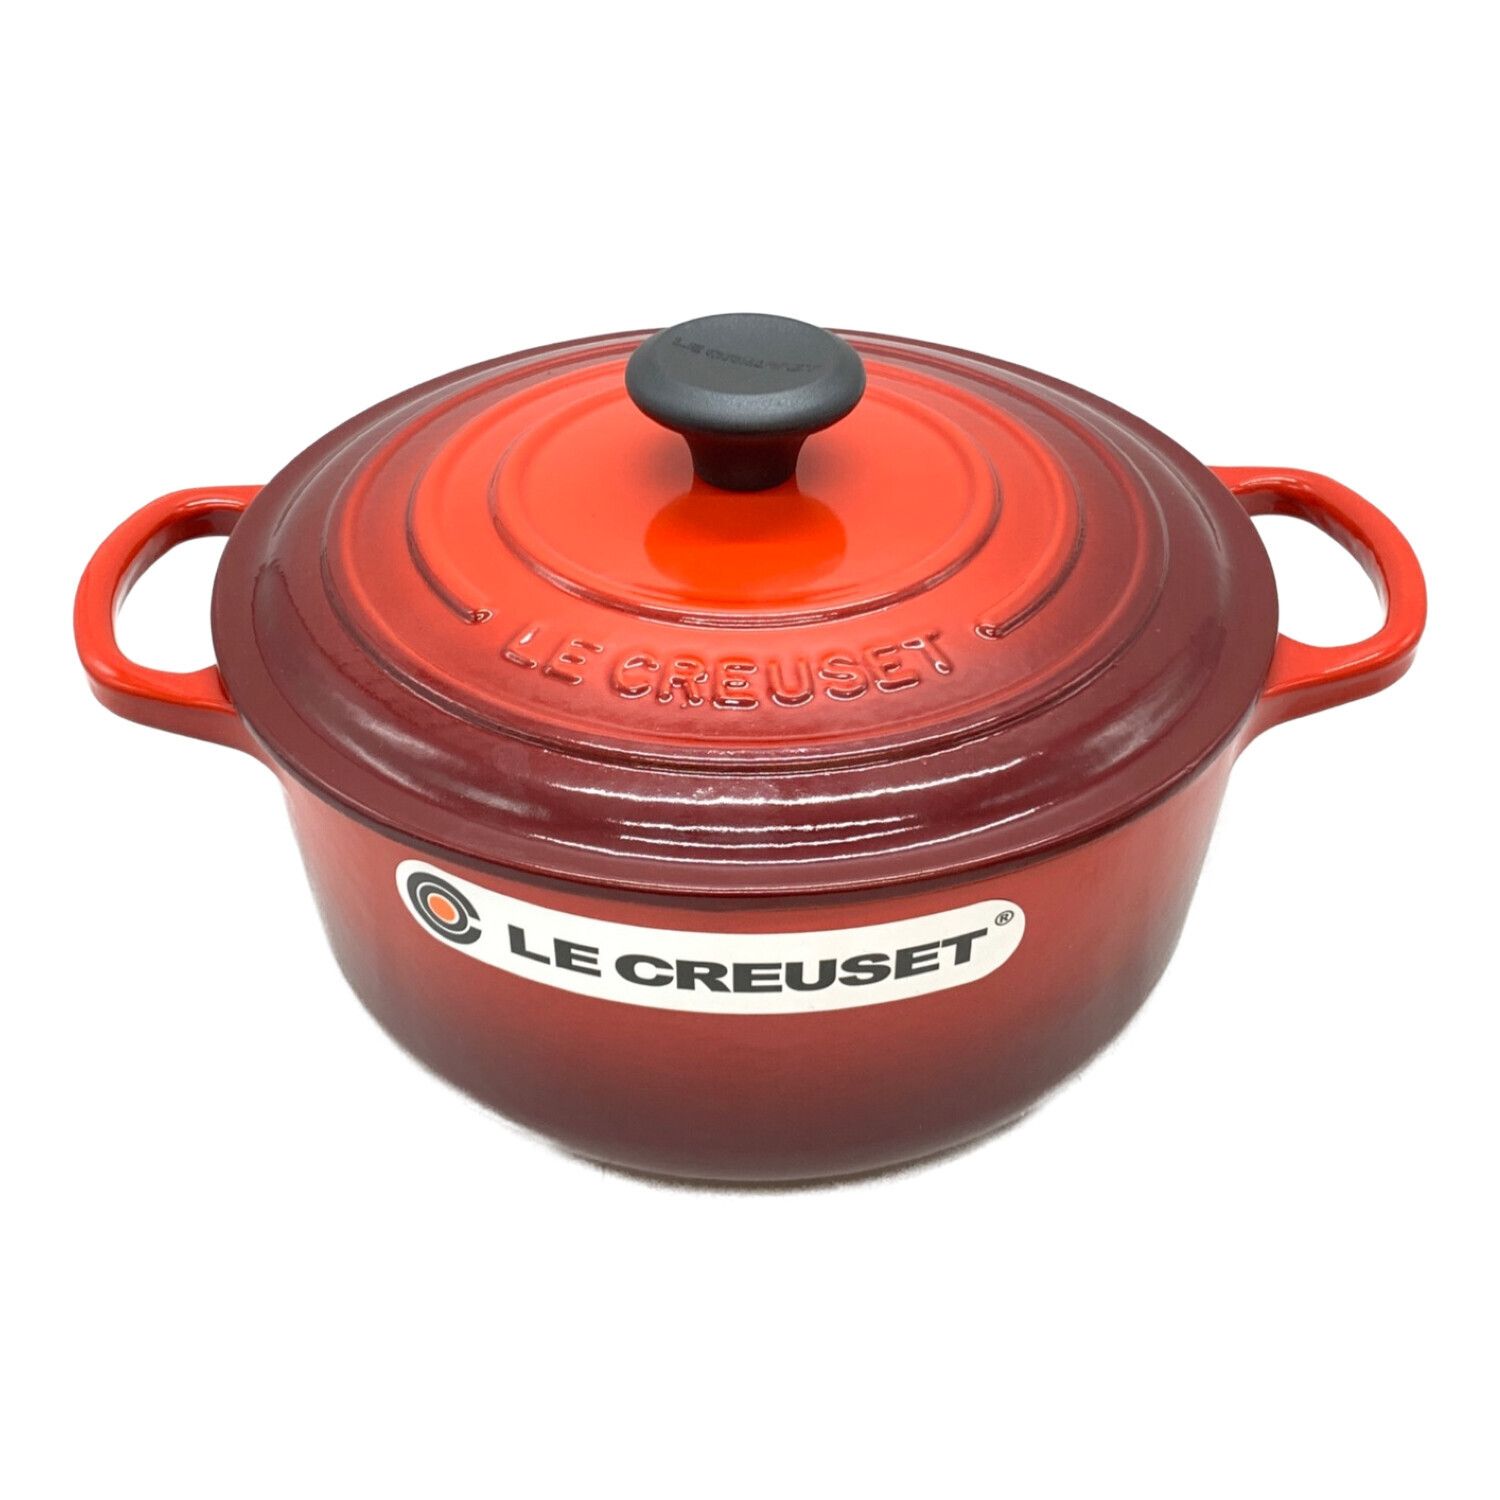 ル・クルーゼ　ココットピーマン　チェリーレッド　両手鍋　新品未使用ピーマン型のお鍋です